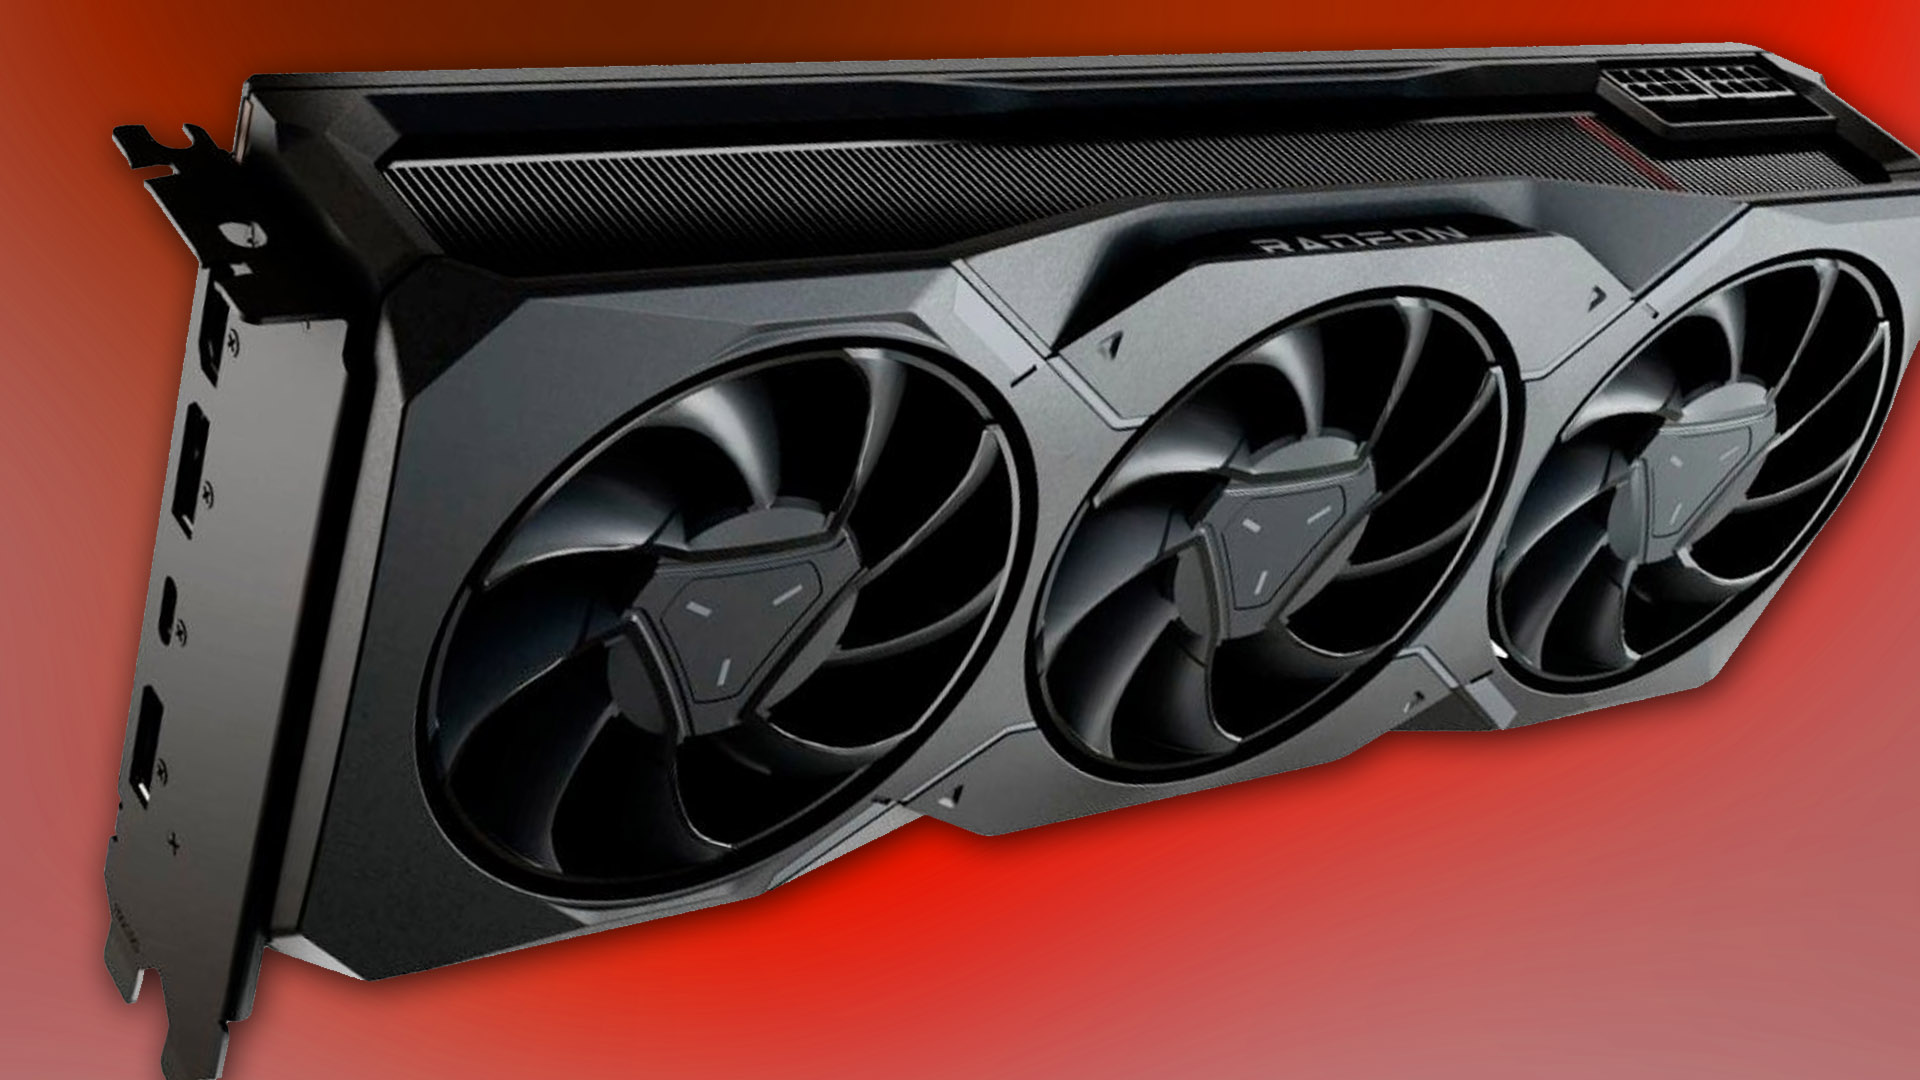 Il prezzo della Radeon RX 7900 XT scende di $ 100, eguagliando il 4070 Ti